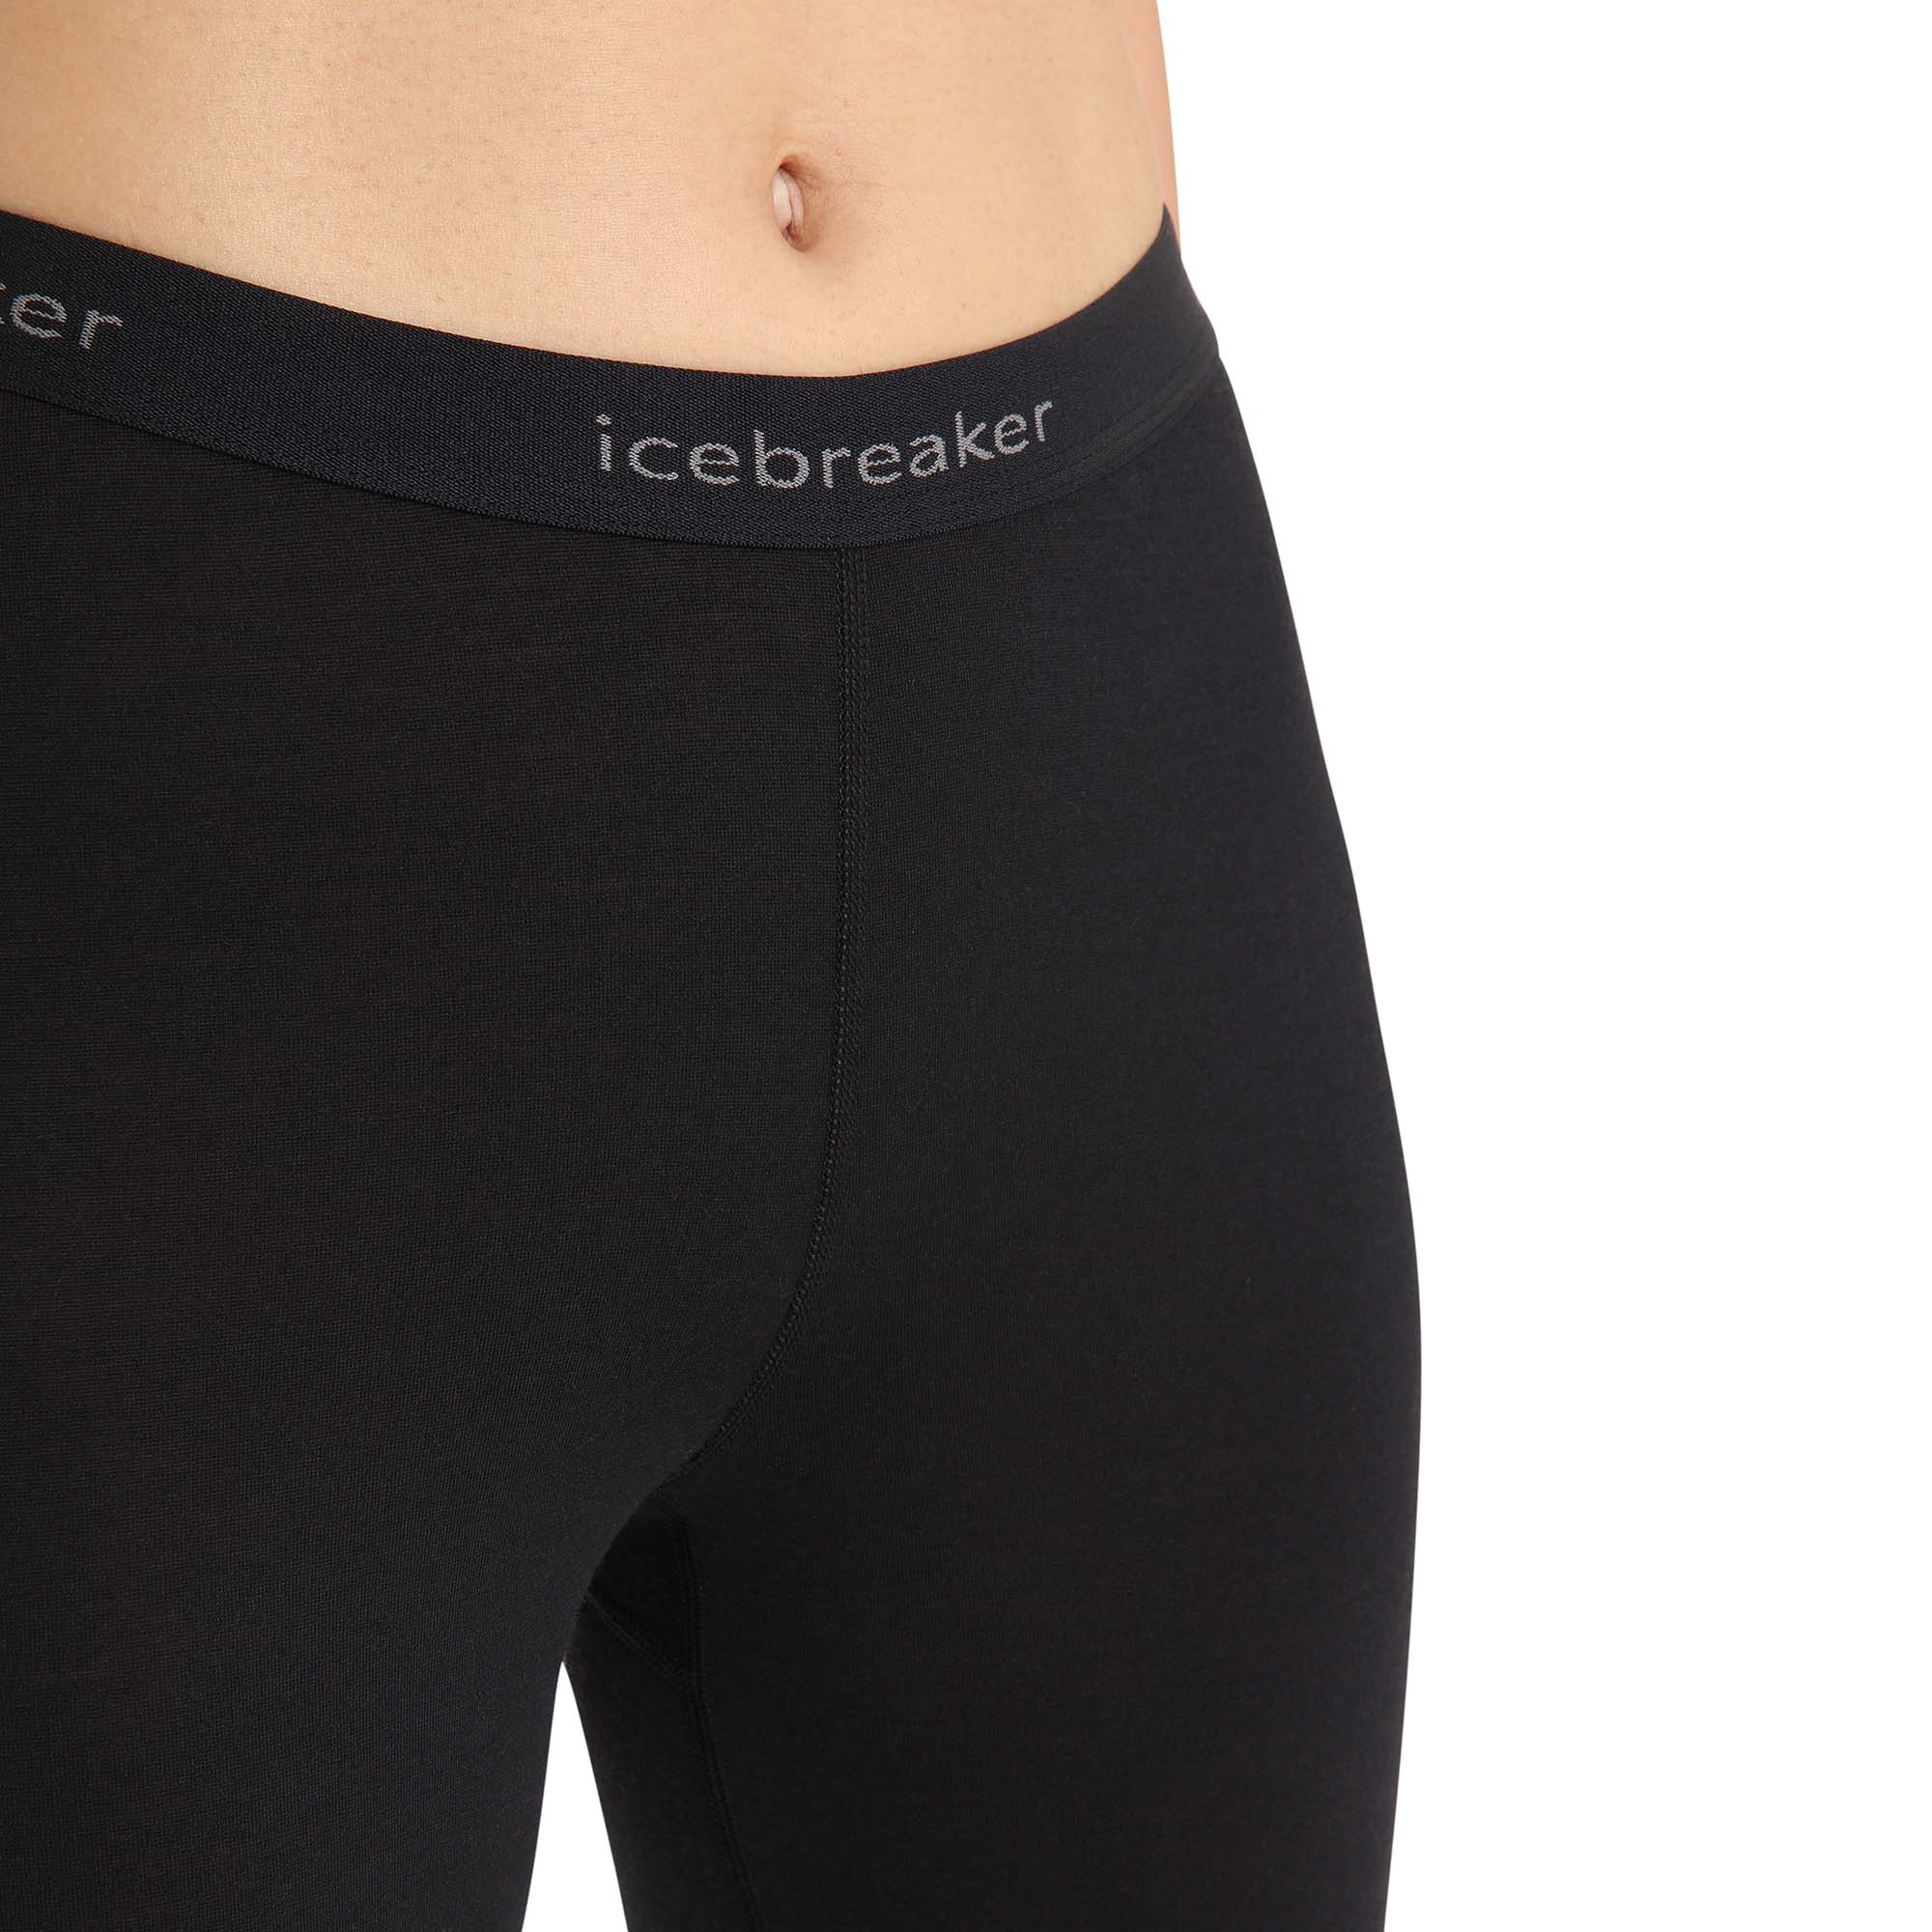 Icebreaker 200 Oasis Women's Leggings